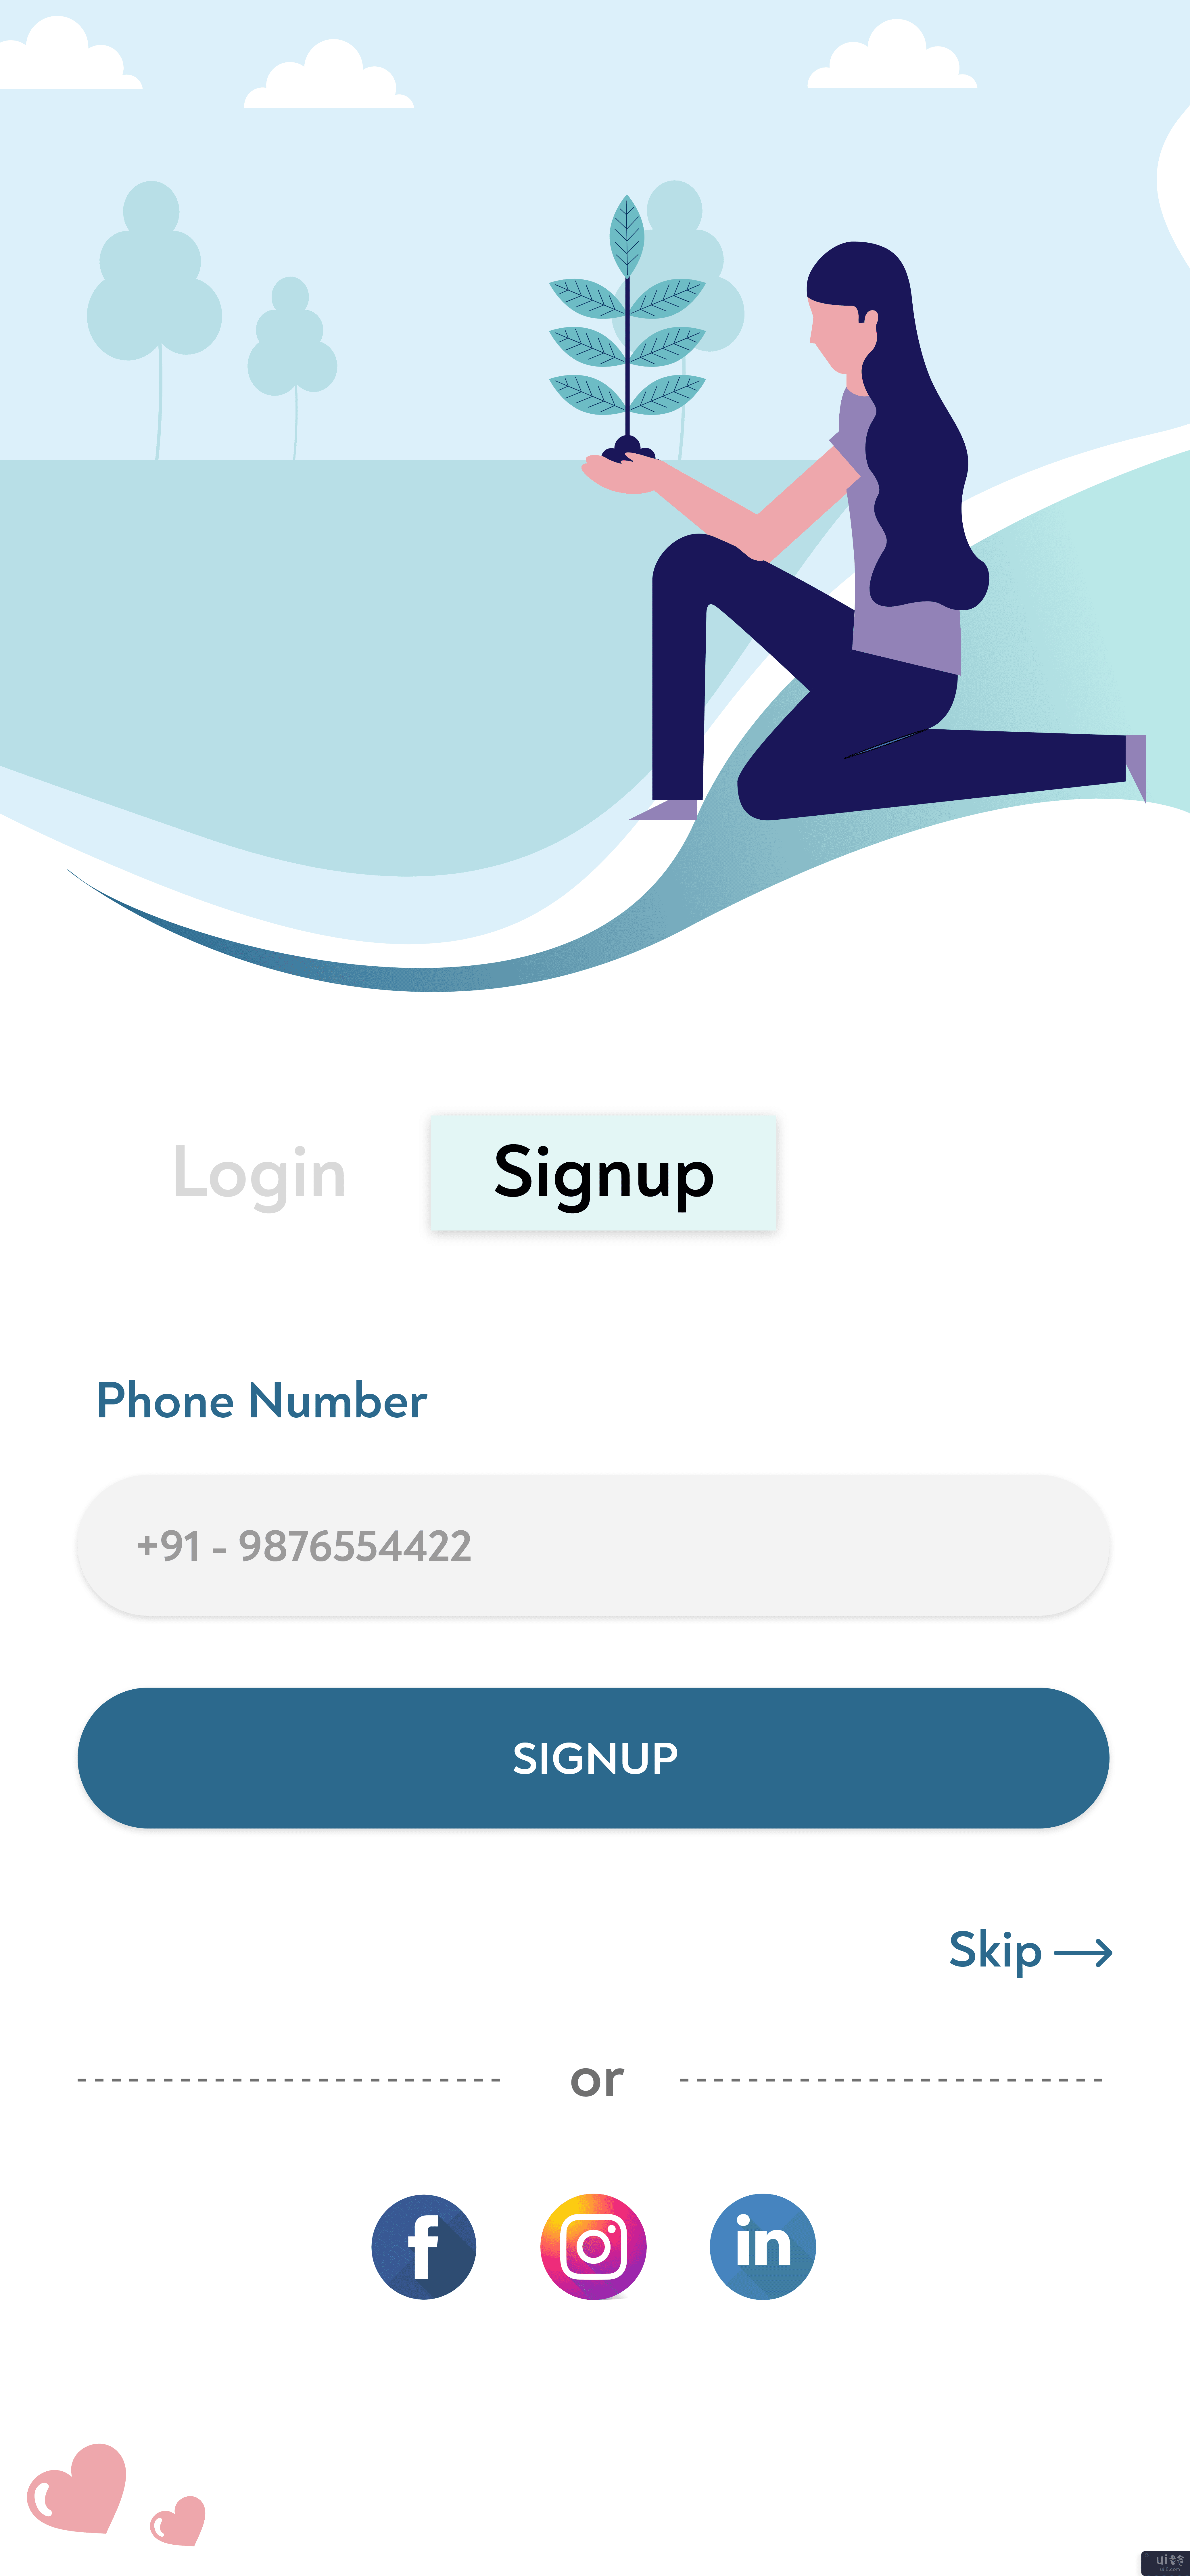 登录 - 注册工具包(Login - Signup Kit)插图